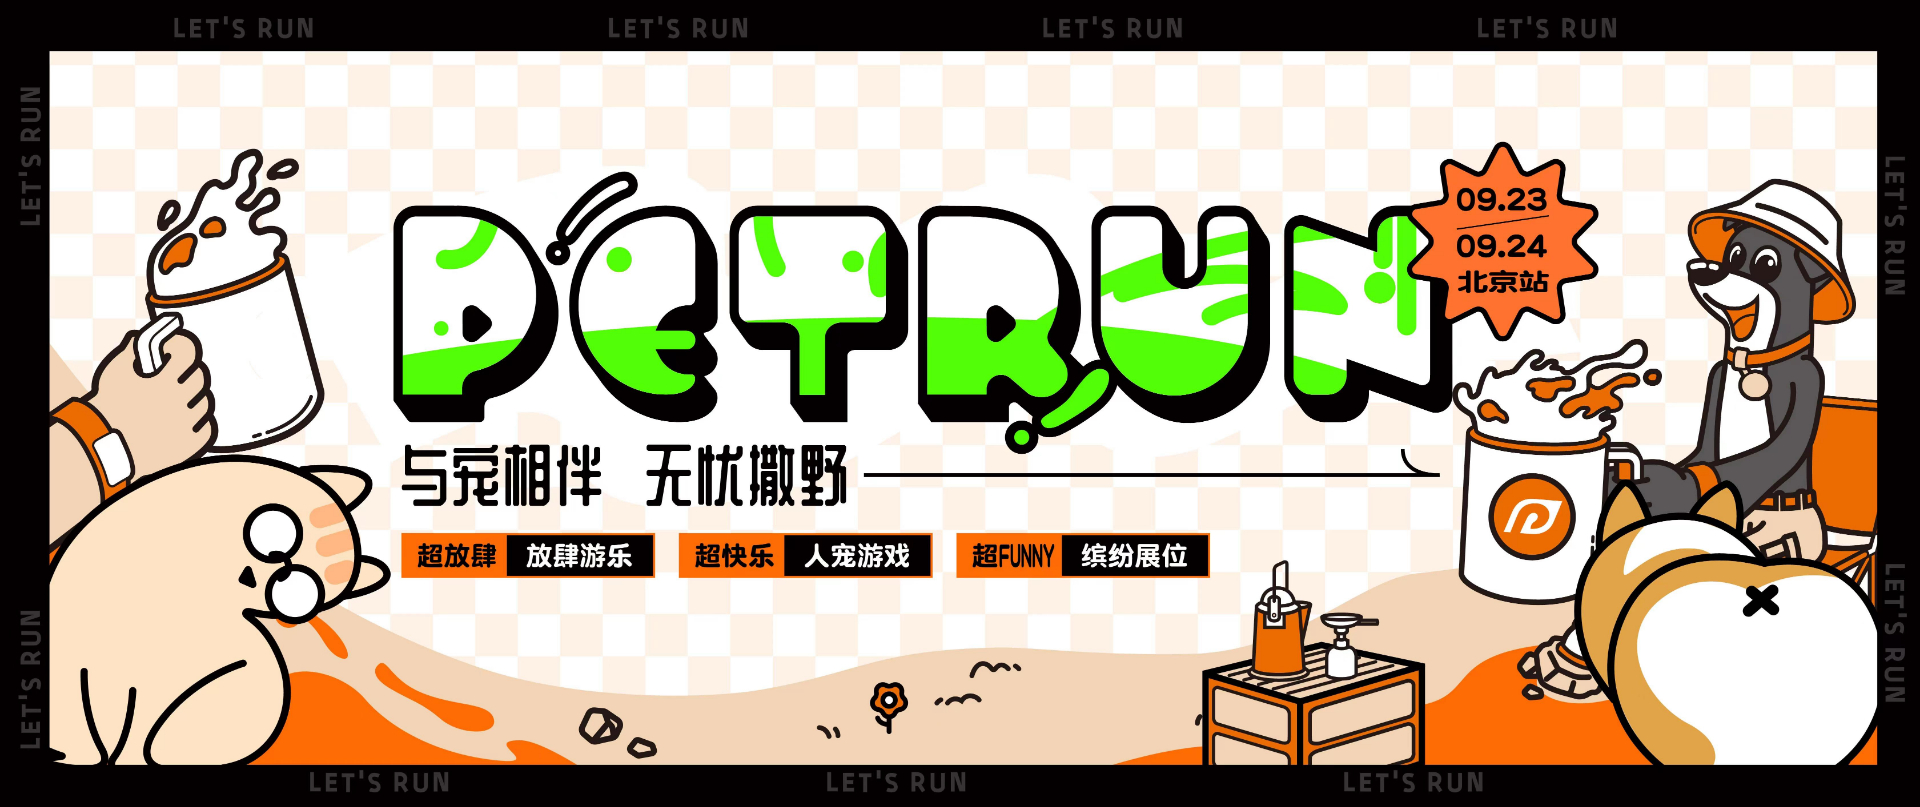 早鸟价限时优惠！2023 Pet Run北京站火热招募中！